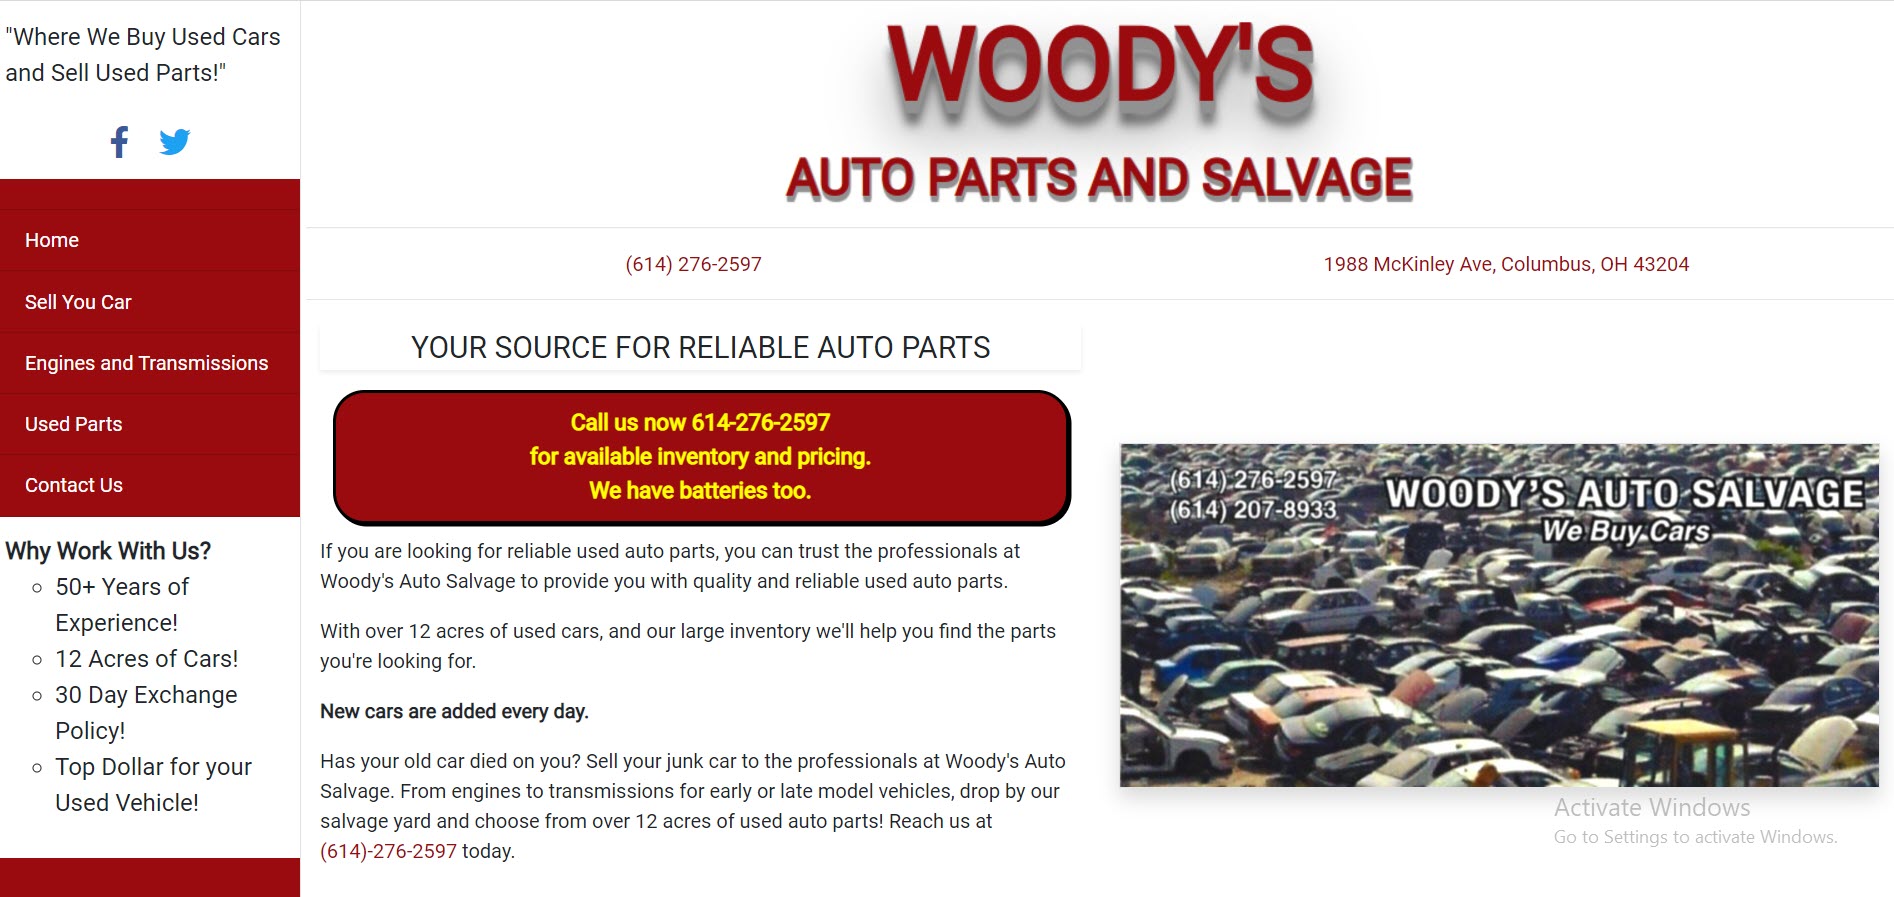 Woody's Auto Salvage